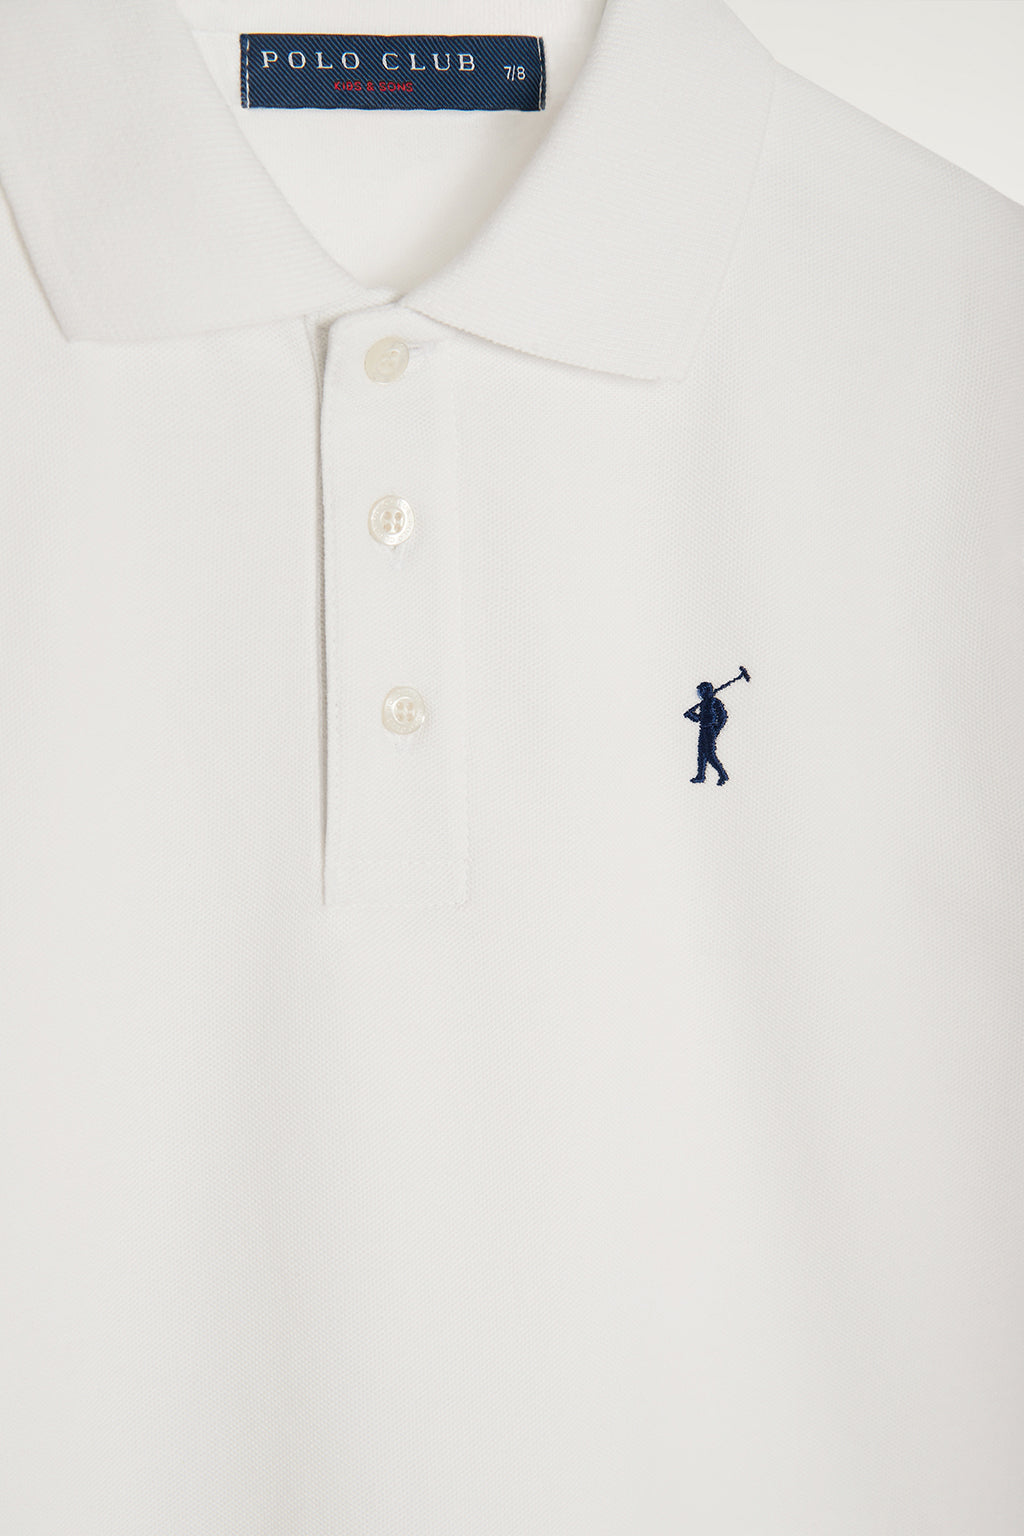 Polo blanco infantil de manga corta con logo bordado a contraste | NIÑOS | POLO CLUB